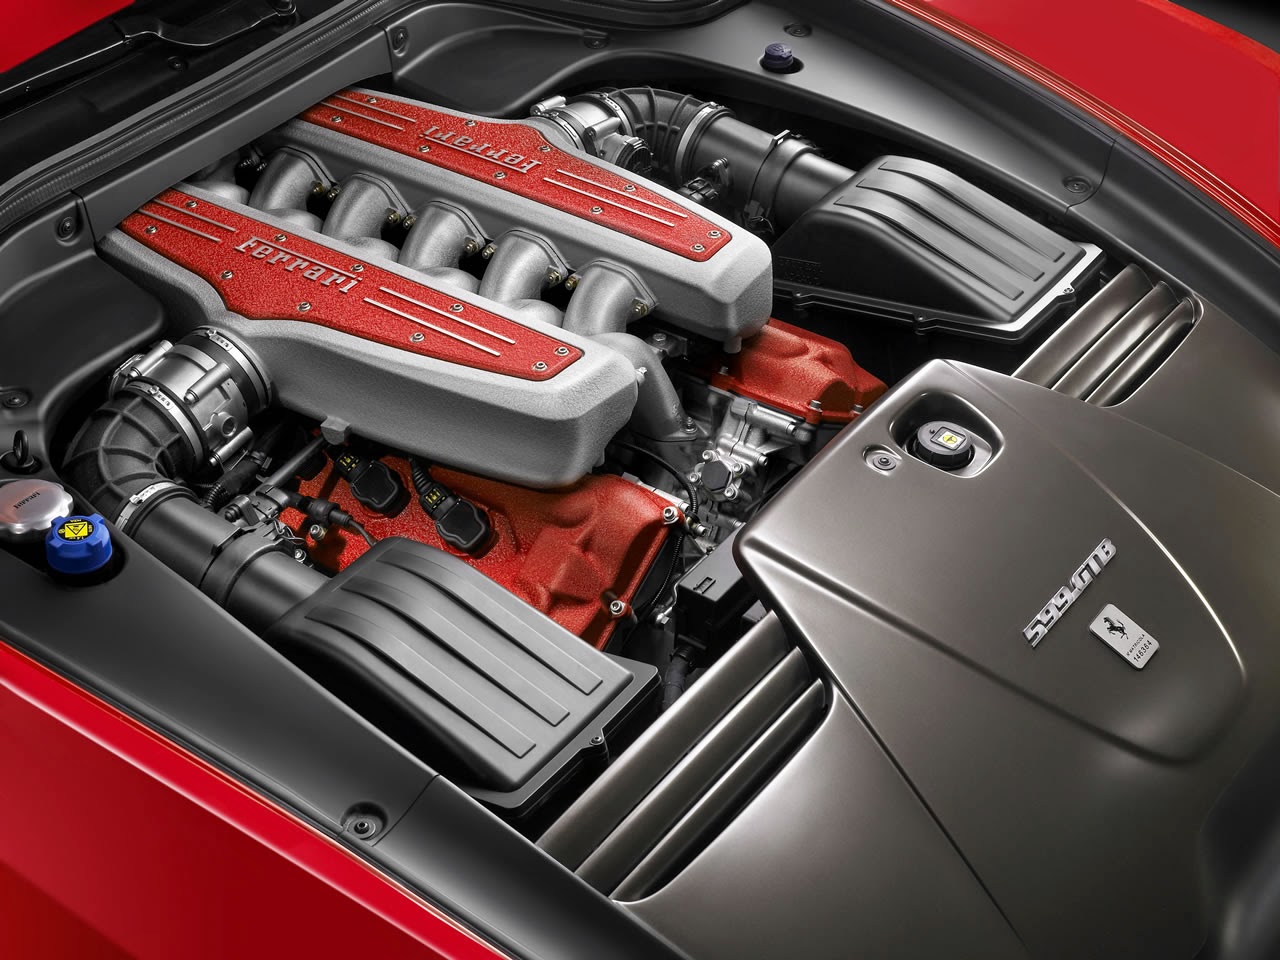 13張紅色法拉利Ferrari  599 GTB Fiorano酷炫高解析度桌布下載！(1280×960)